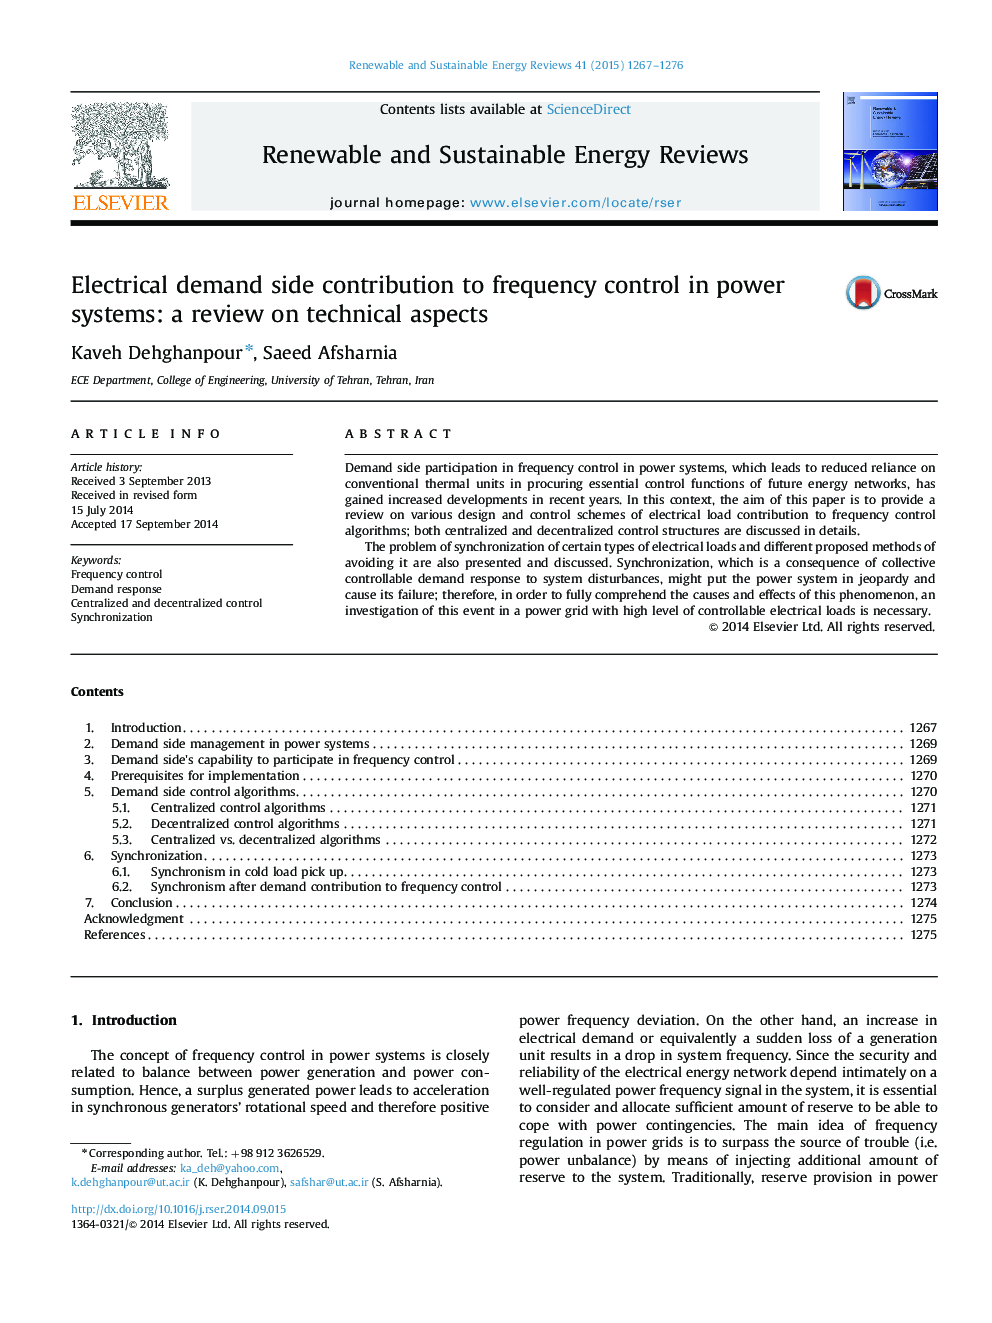 سهم تقاضای برق در کنترل فرکانس در سیستم های قدرت: بررسی در مورد جنبه های فنی 